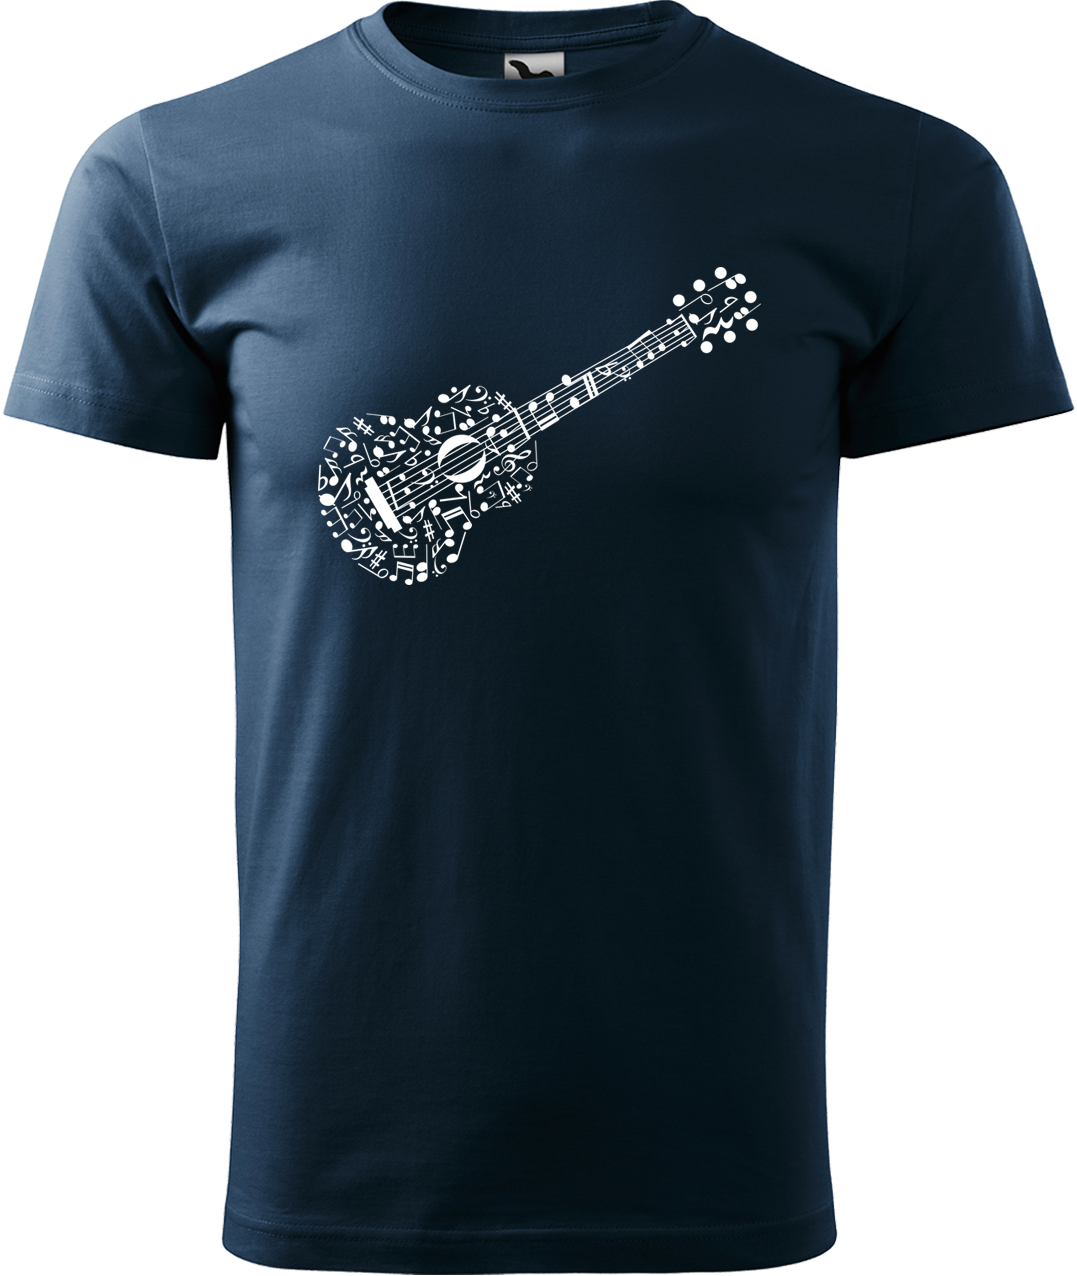 Pánské tričko s kytarou - Kytara z not Velikost: S, Barva: Námořní modrá (02), Střih: pánský